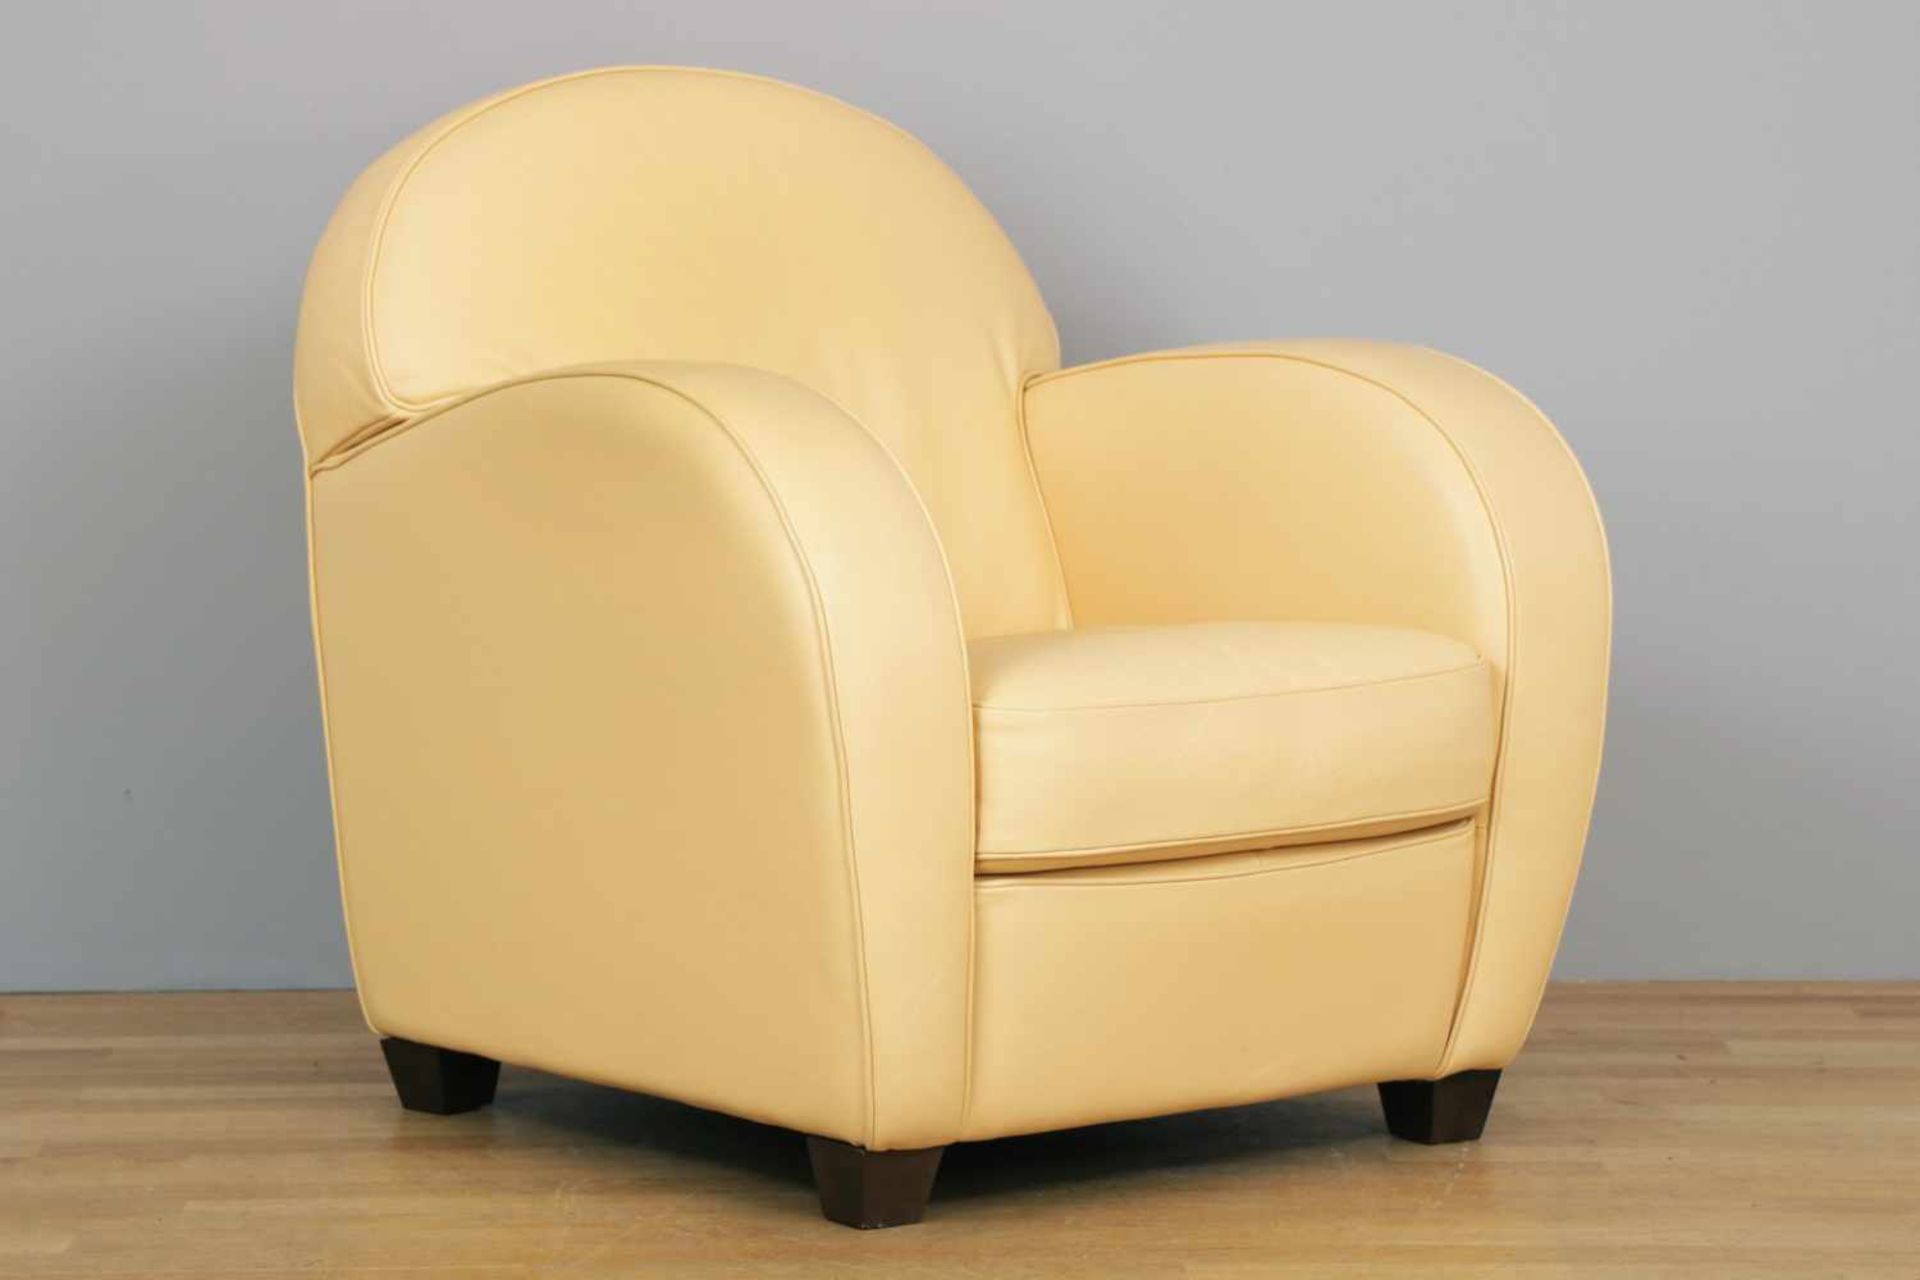 Club-Sessel im Stile des Art DecoItalien, spätes 20. Jhdt., beige beledert, Rundrücken, breite